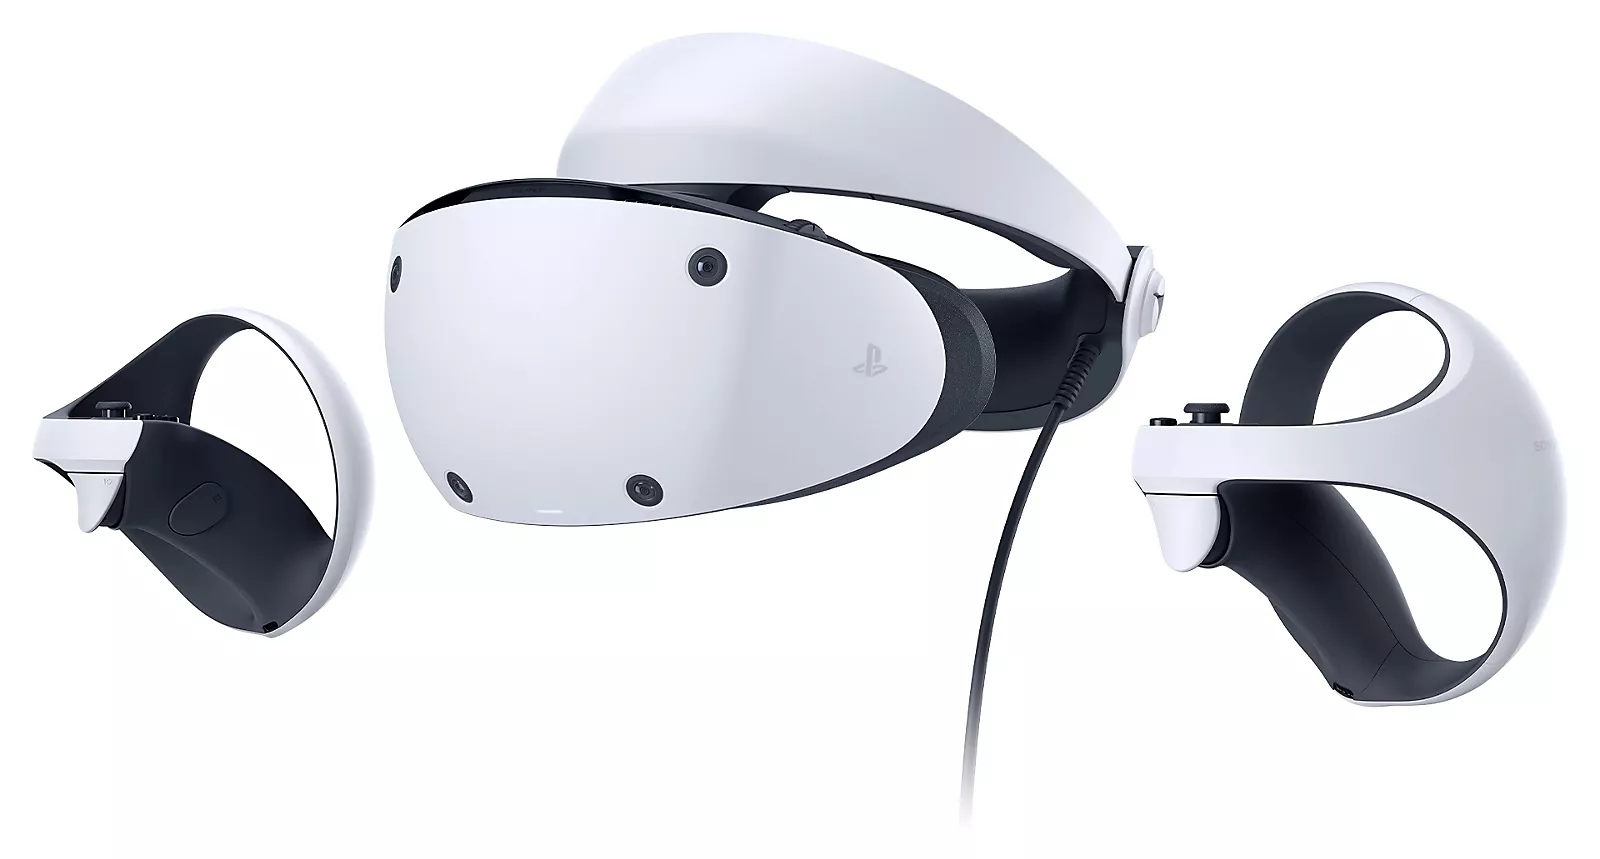 Sony halbiert anscheinend die erwarteten Absatzzahlen von PS VR2 für das Launchquartal Heropic